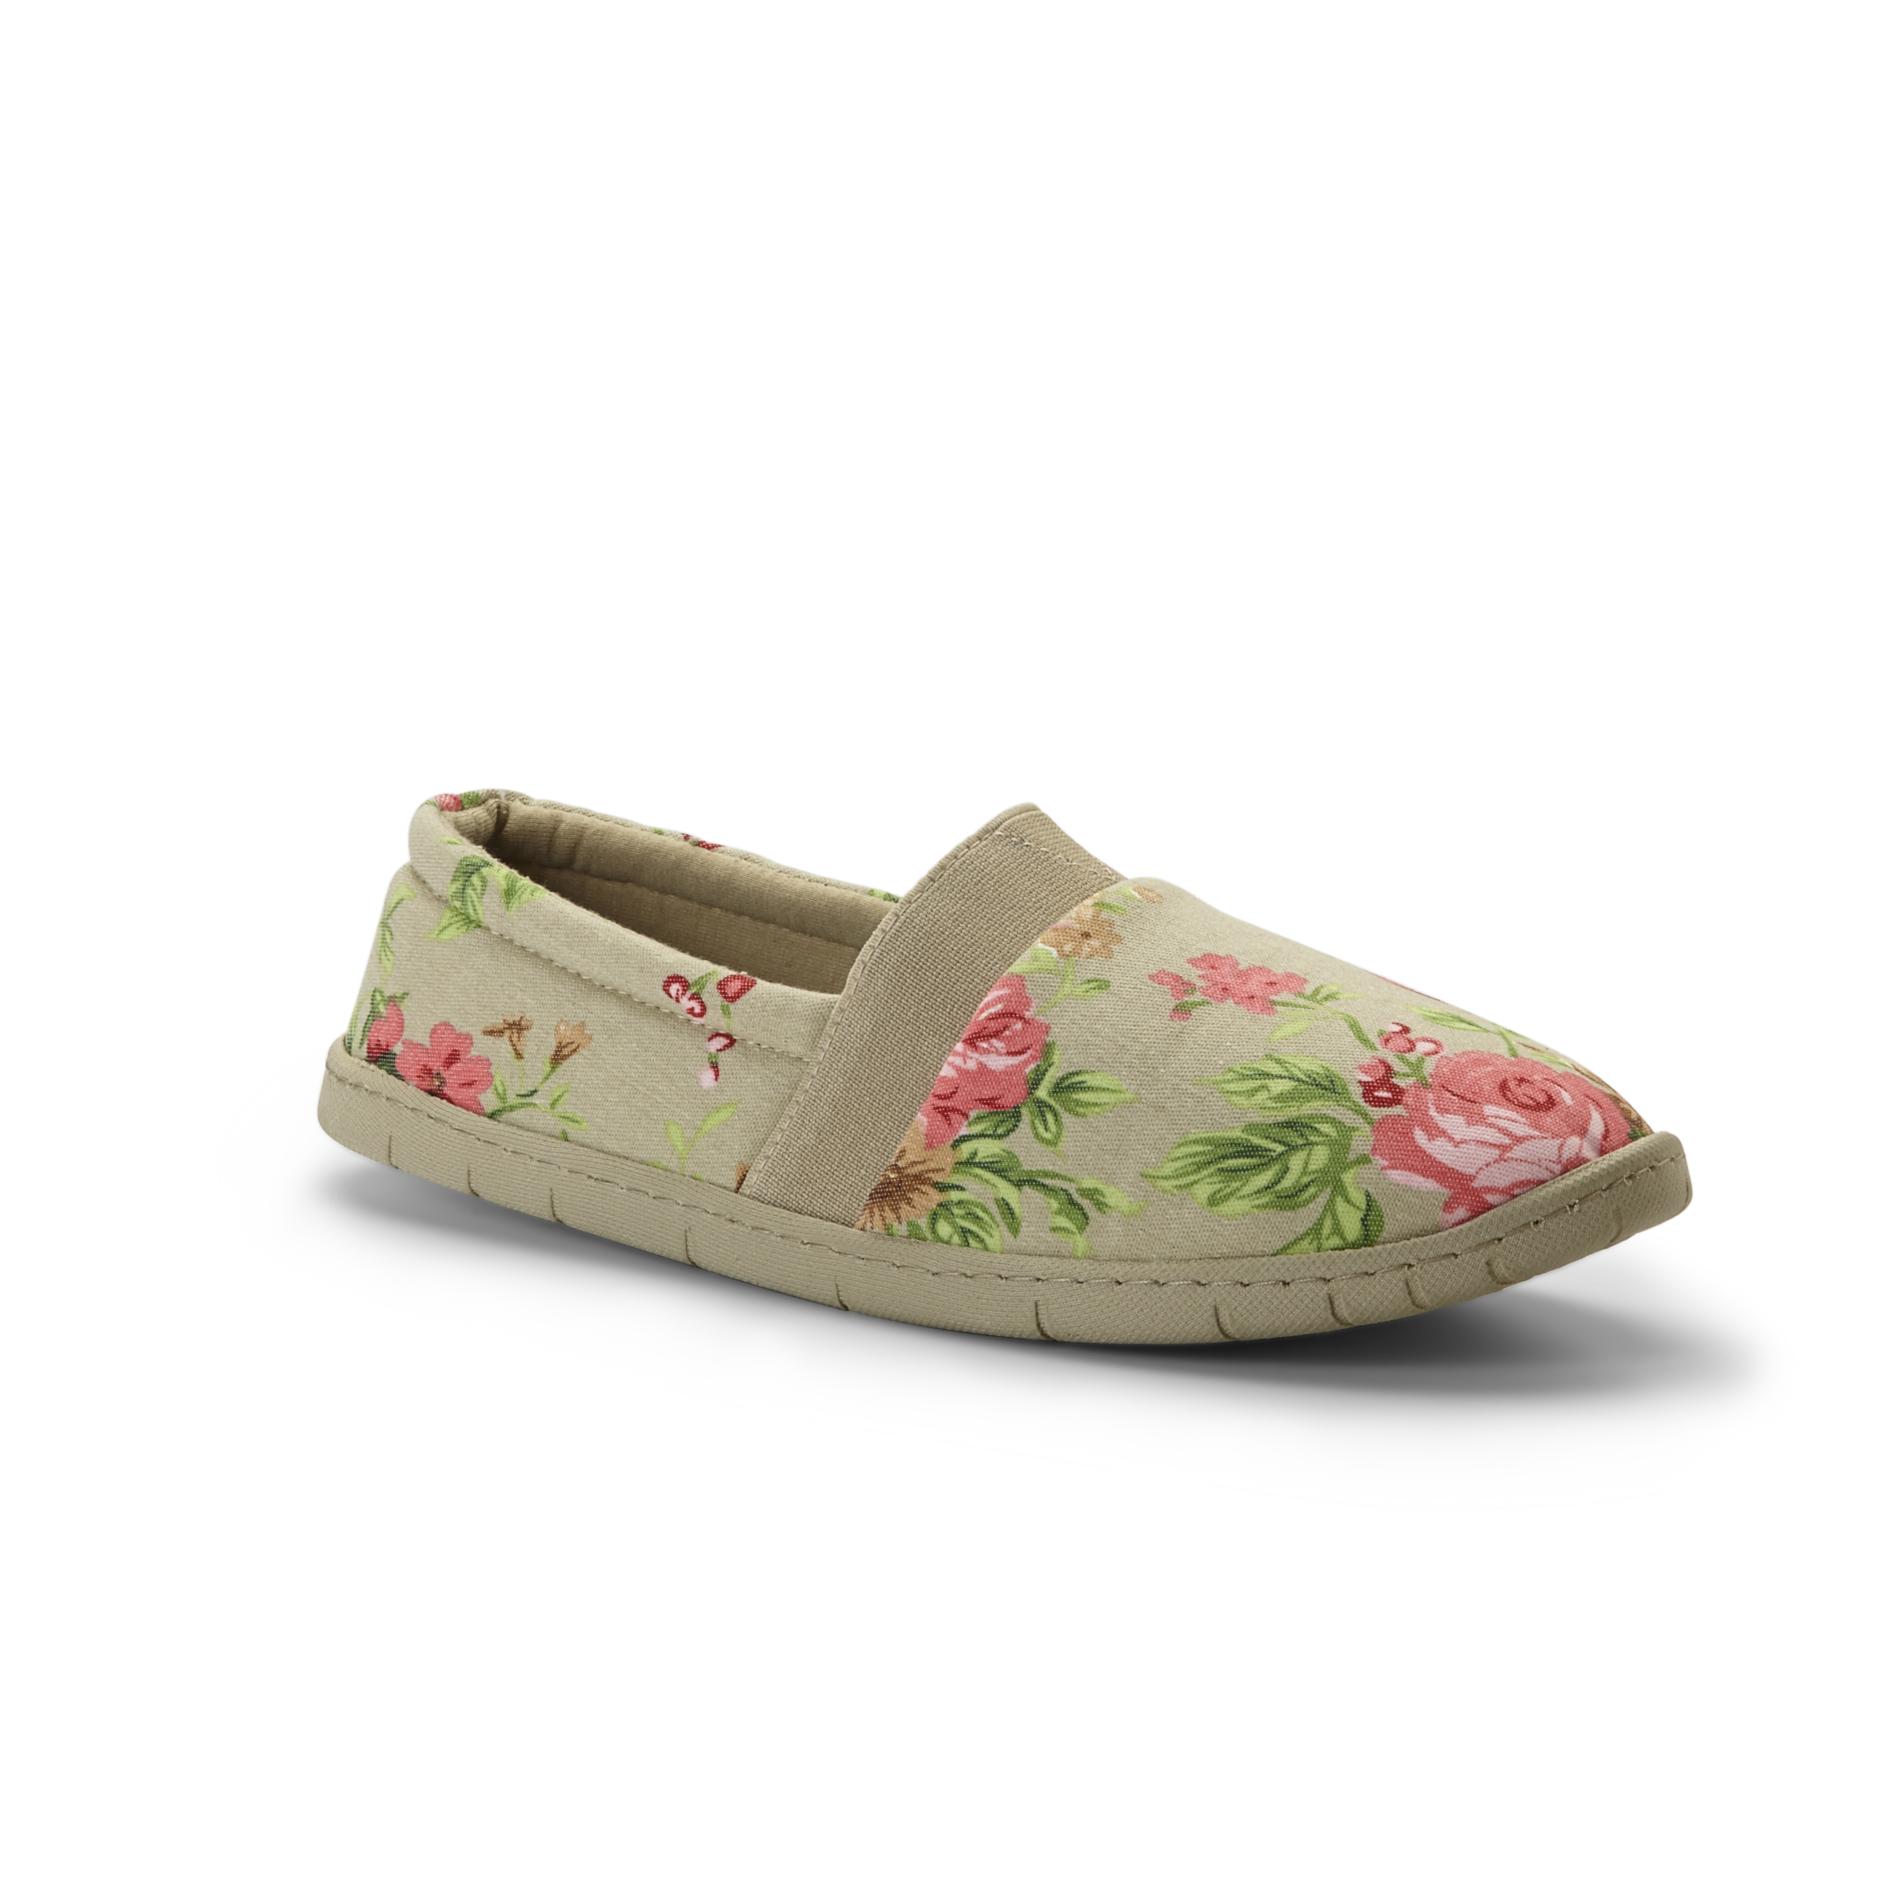 Dearfoams Women's Slipper Shoes - Floral